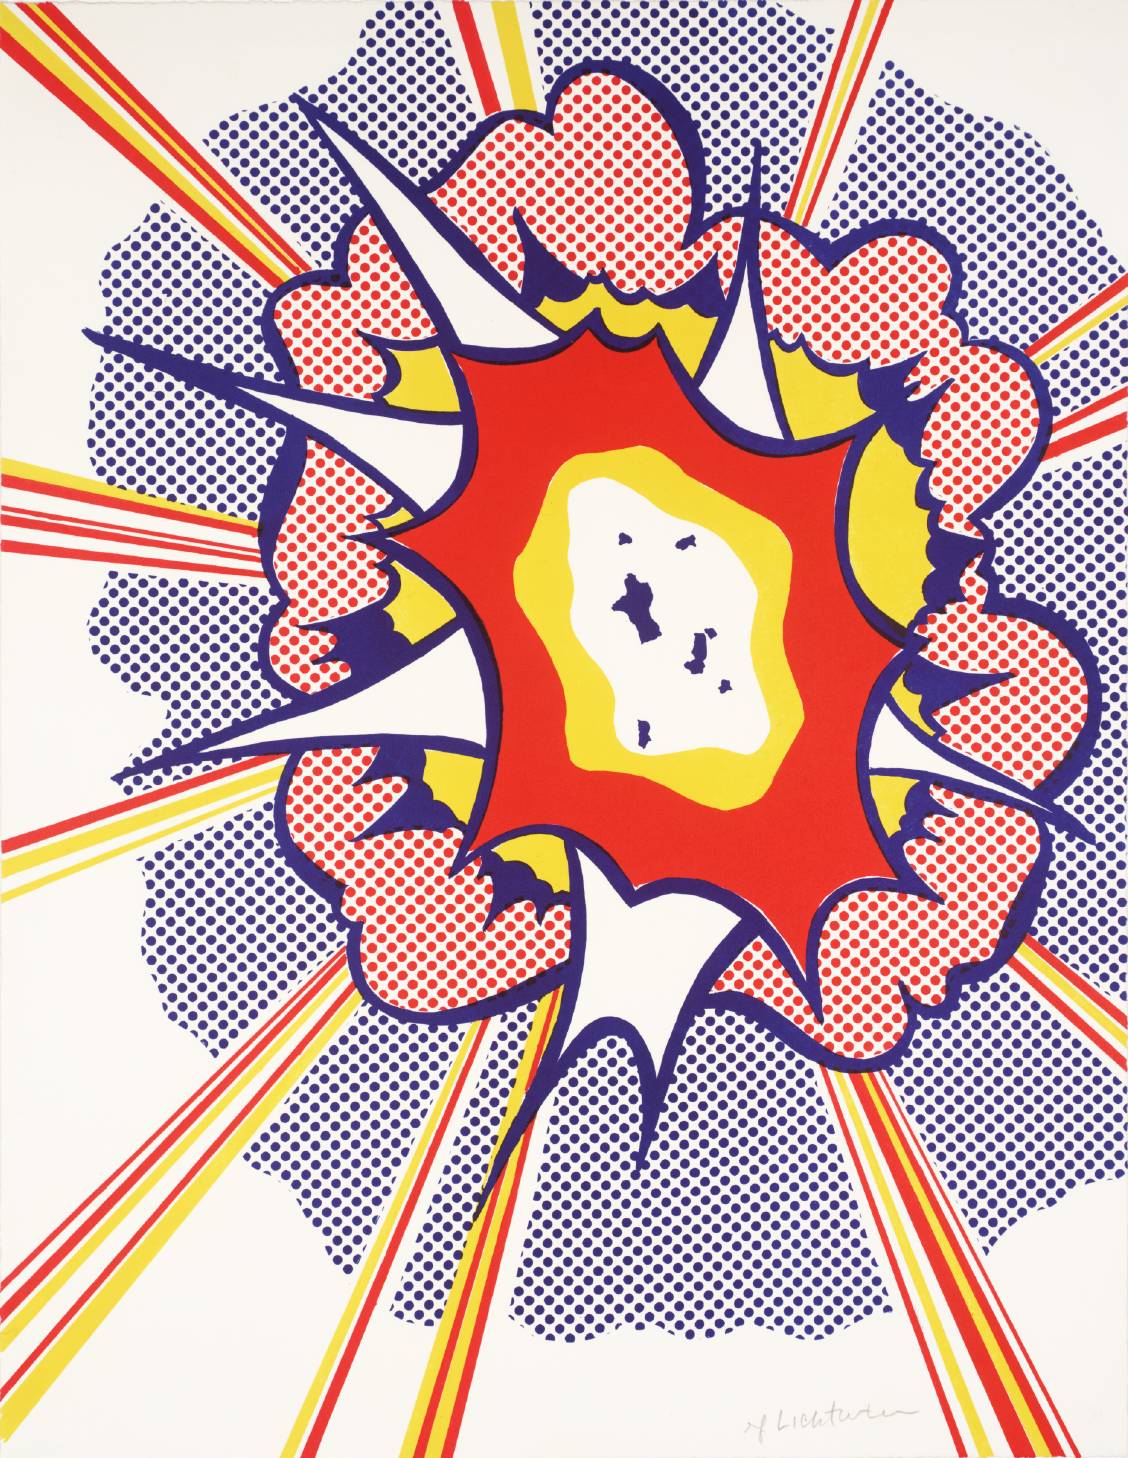 Explosion 1965-6 by Roy Lichtenstein 1923-1997